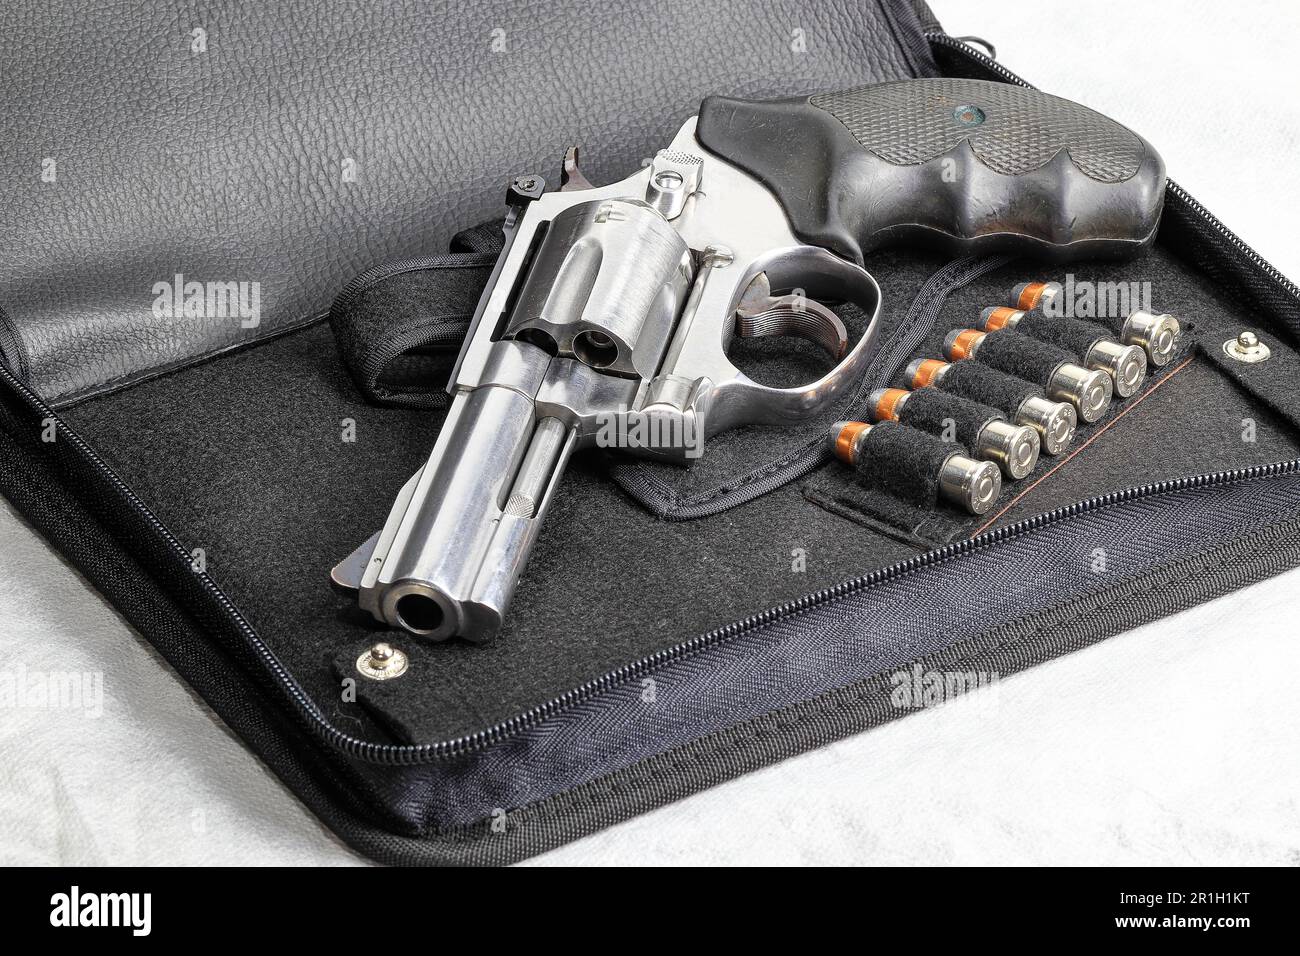 Die kompakte Revolverpistole, j-Rahmen, M60-Pistole, Seitenansicht vorn links, mit Schließzylinder, für den Einsatz vorbereitet, isoliert auf einem Pistolenbeutel. Stockfoto